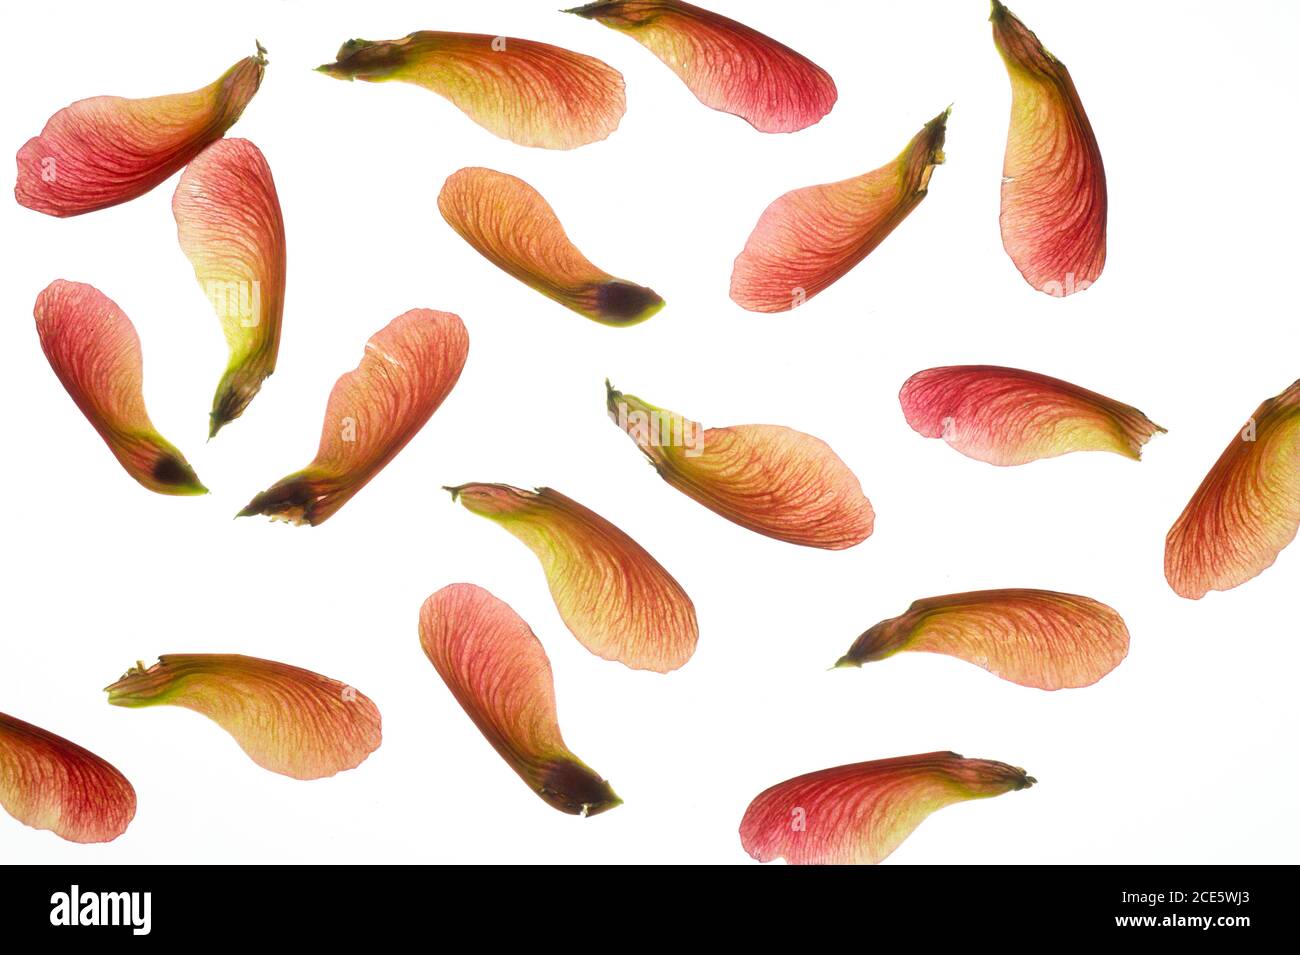 „Herbstbrand“ (Kreuz zwischen einem roten Ahorn und einem silbernen Ahorn) Samen (samaras) im späten Frühling (Acer x freemanii) Stockfoto